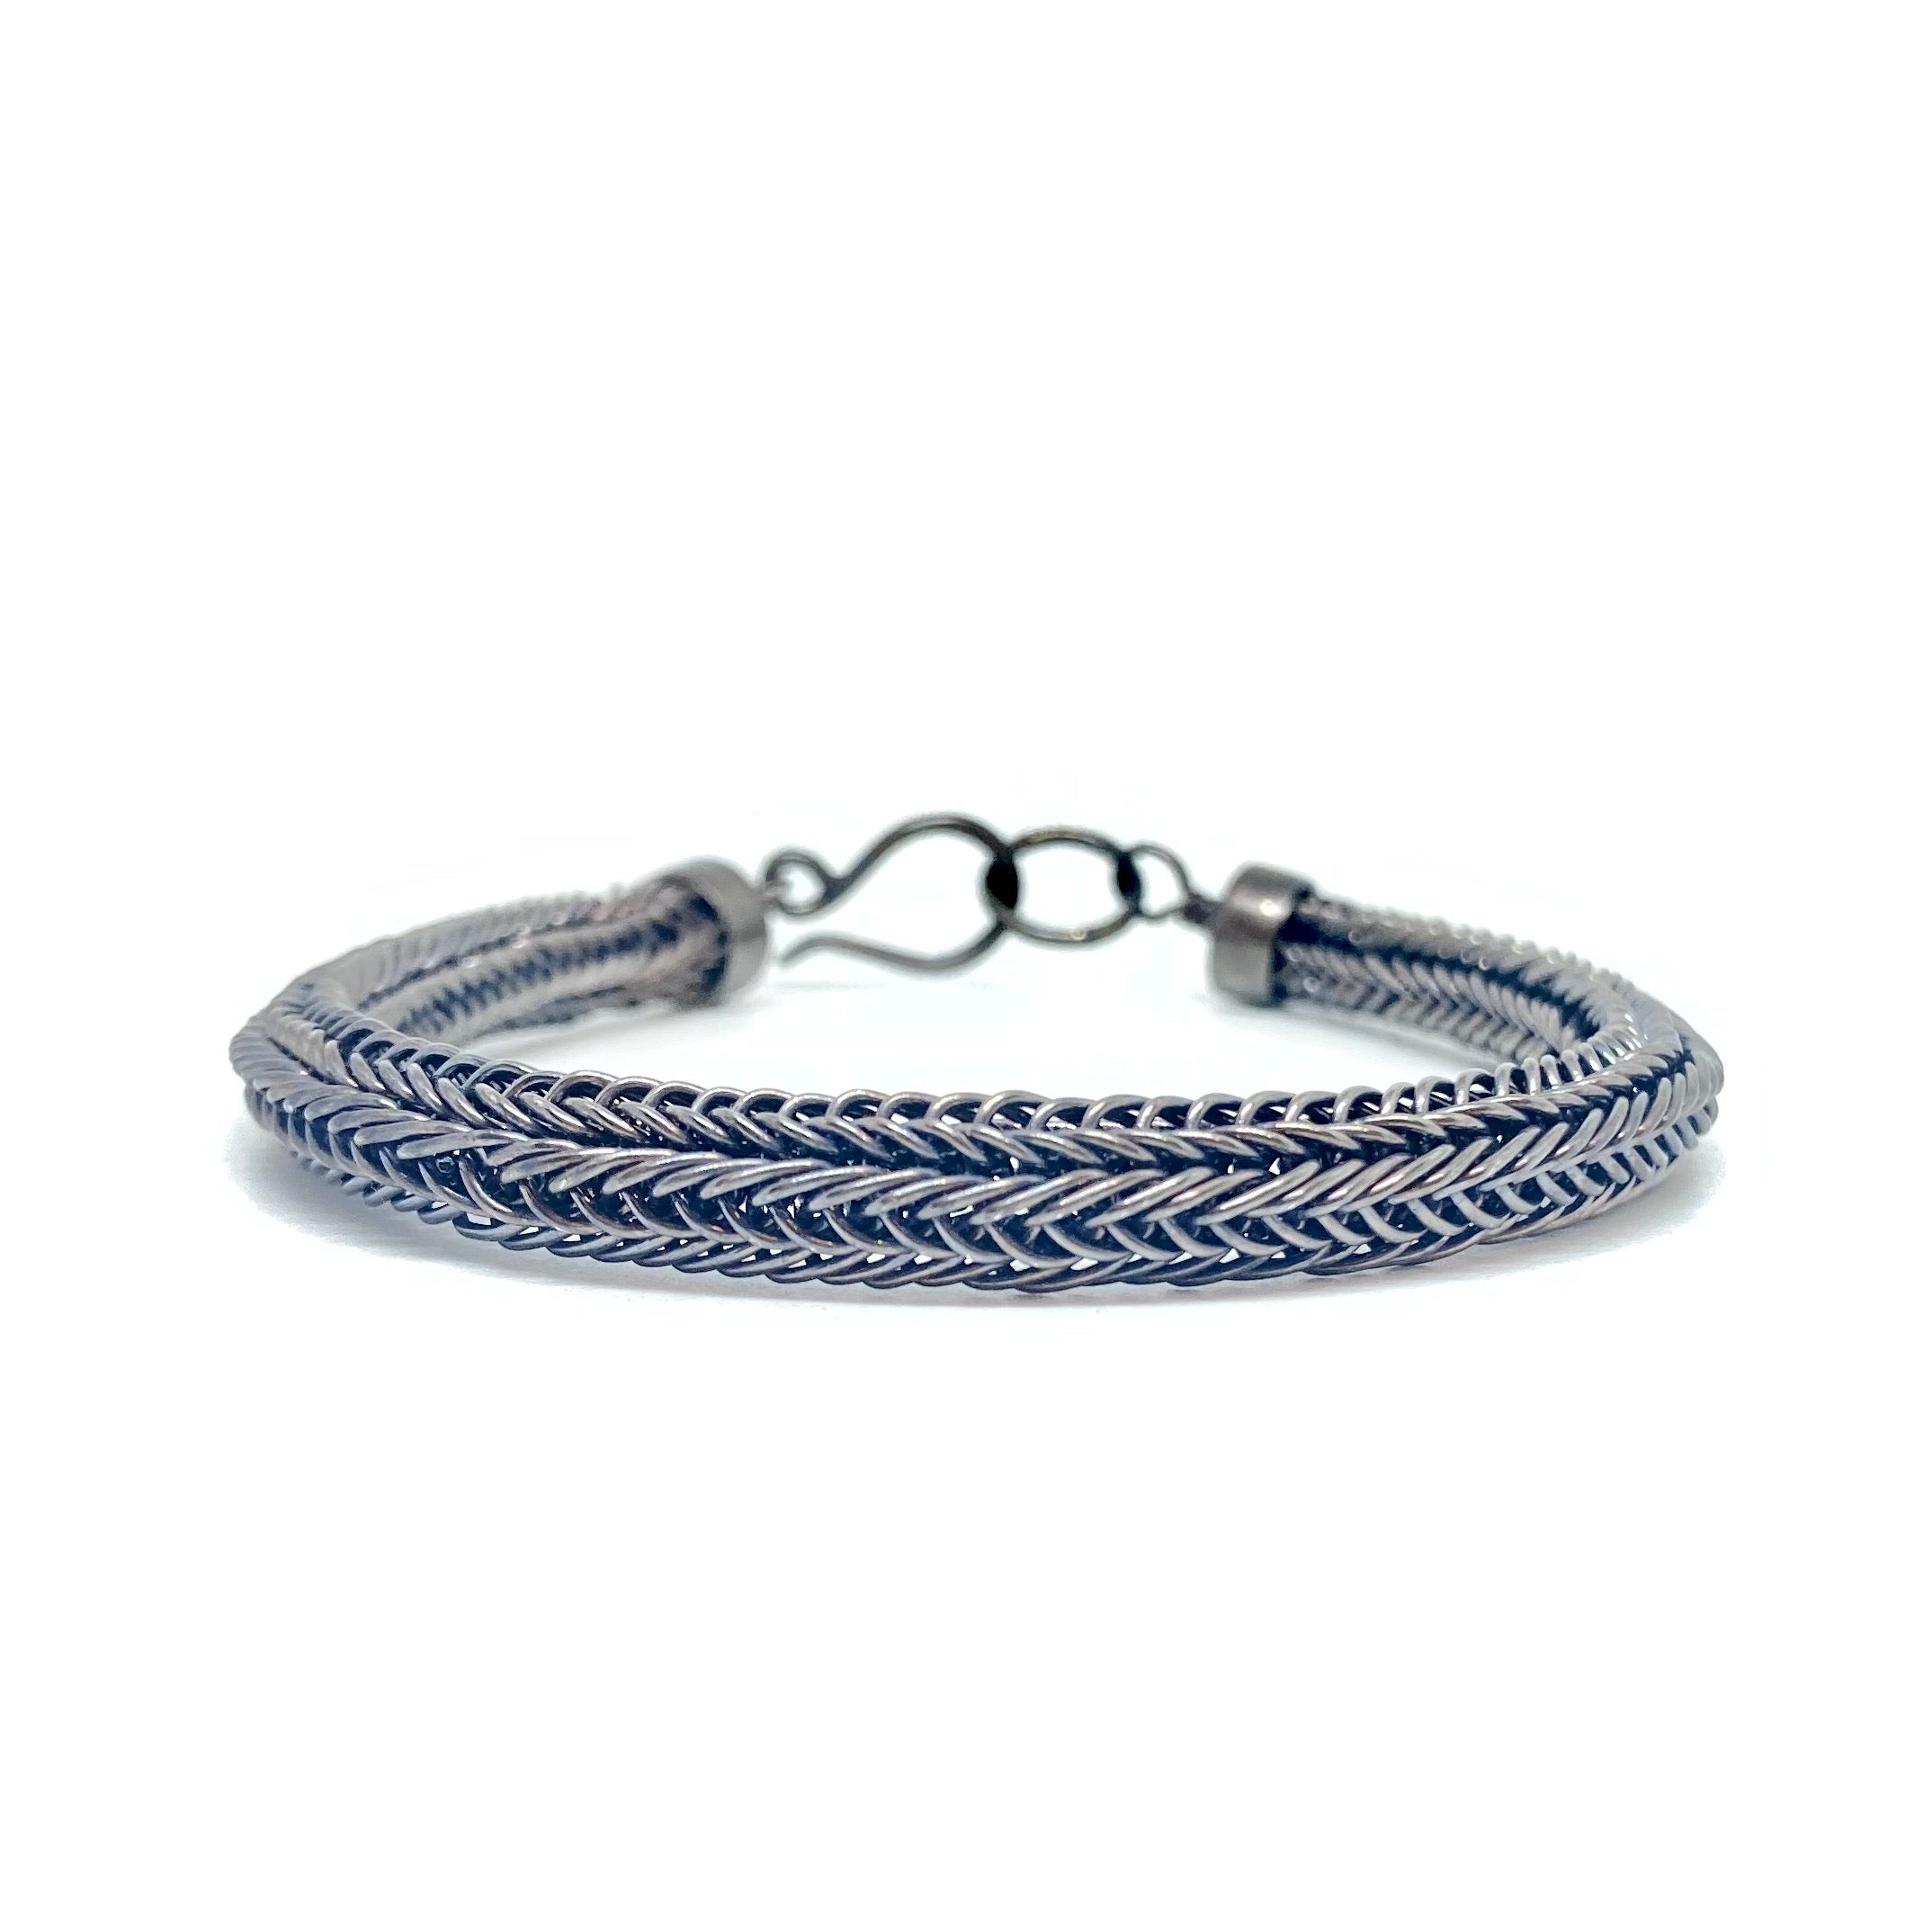 knitted bracelets | Knit bracelet, Baby knitting patterns, Bracelet patterns